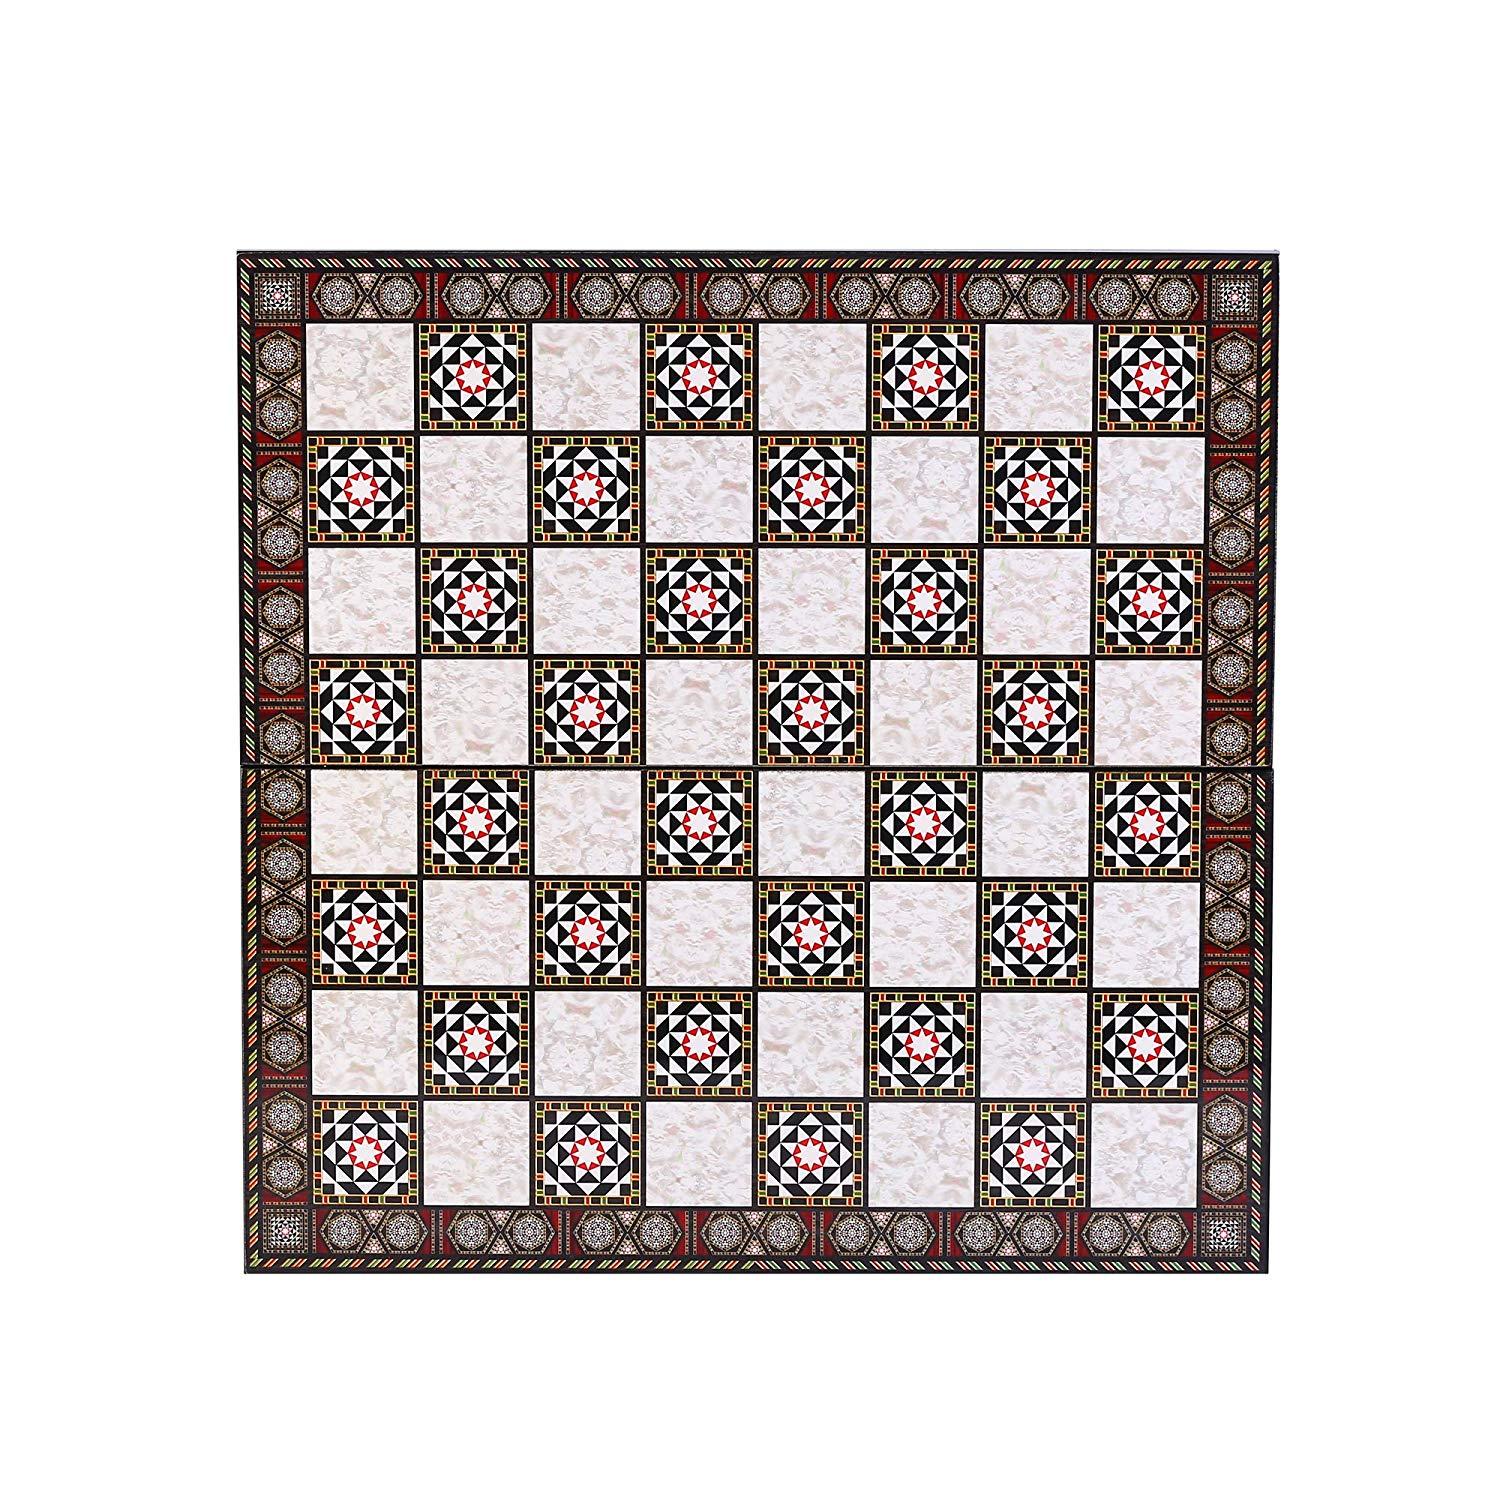 Изображение товара: Классический Шахматный набор для взрослых, шахматные доски ручной работы с жемчугом мамы, 7 см